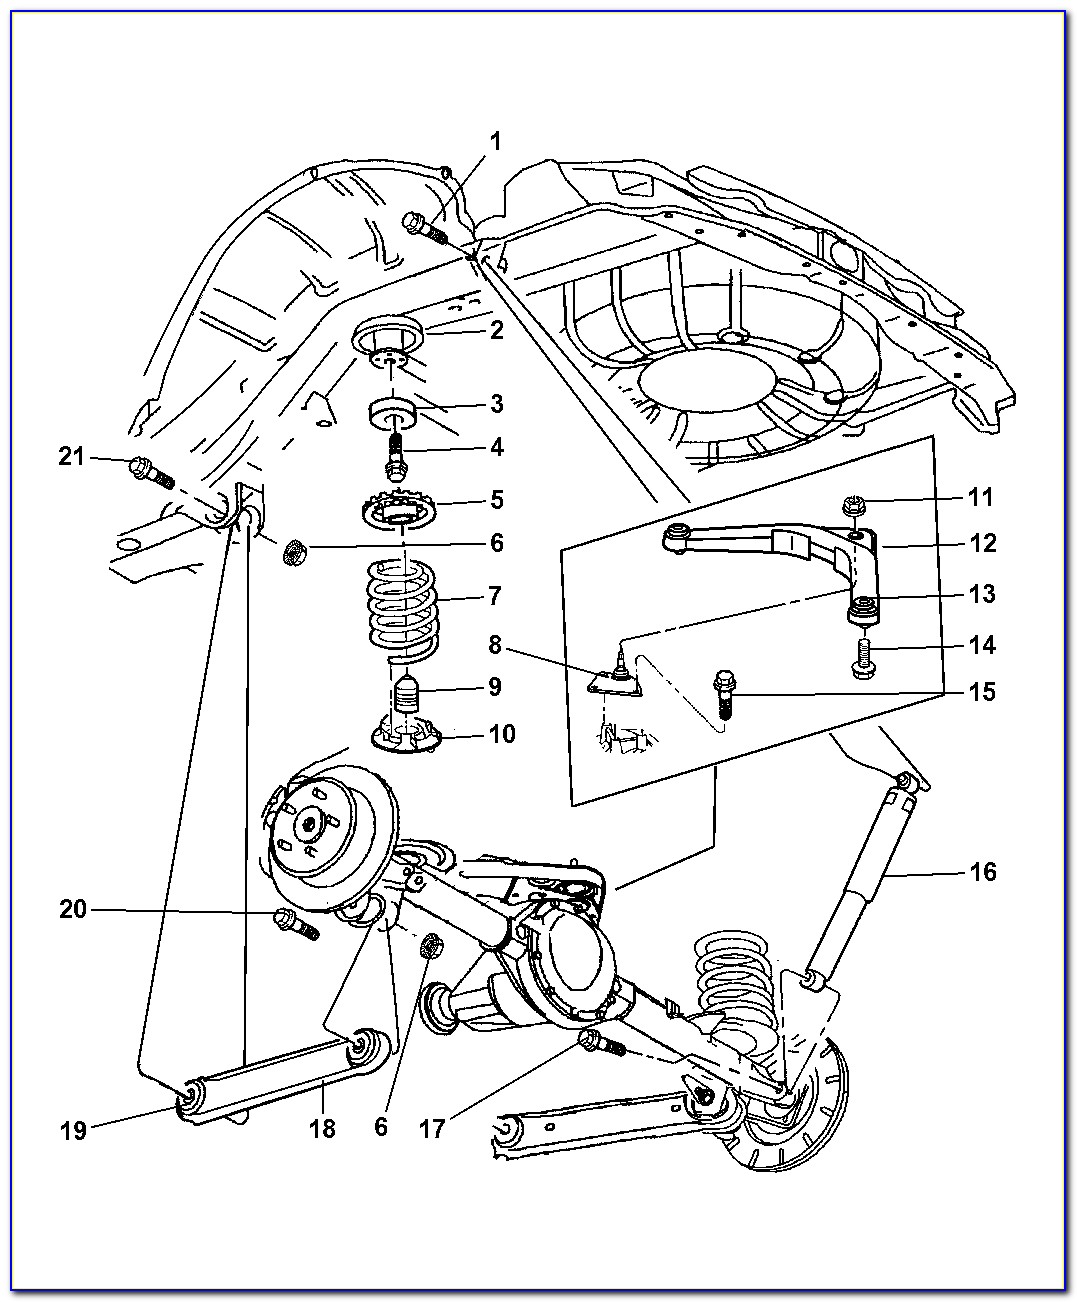 2000 Jeep Grand Cherokee Rear Suspension Diagram